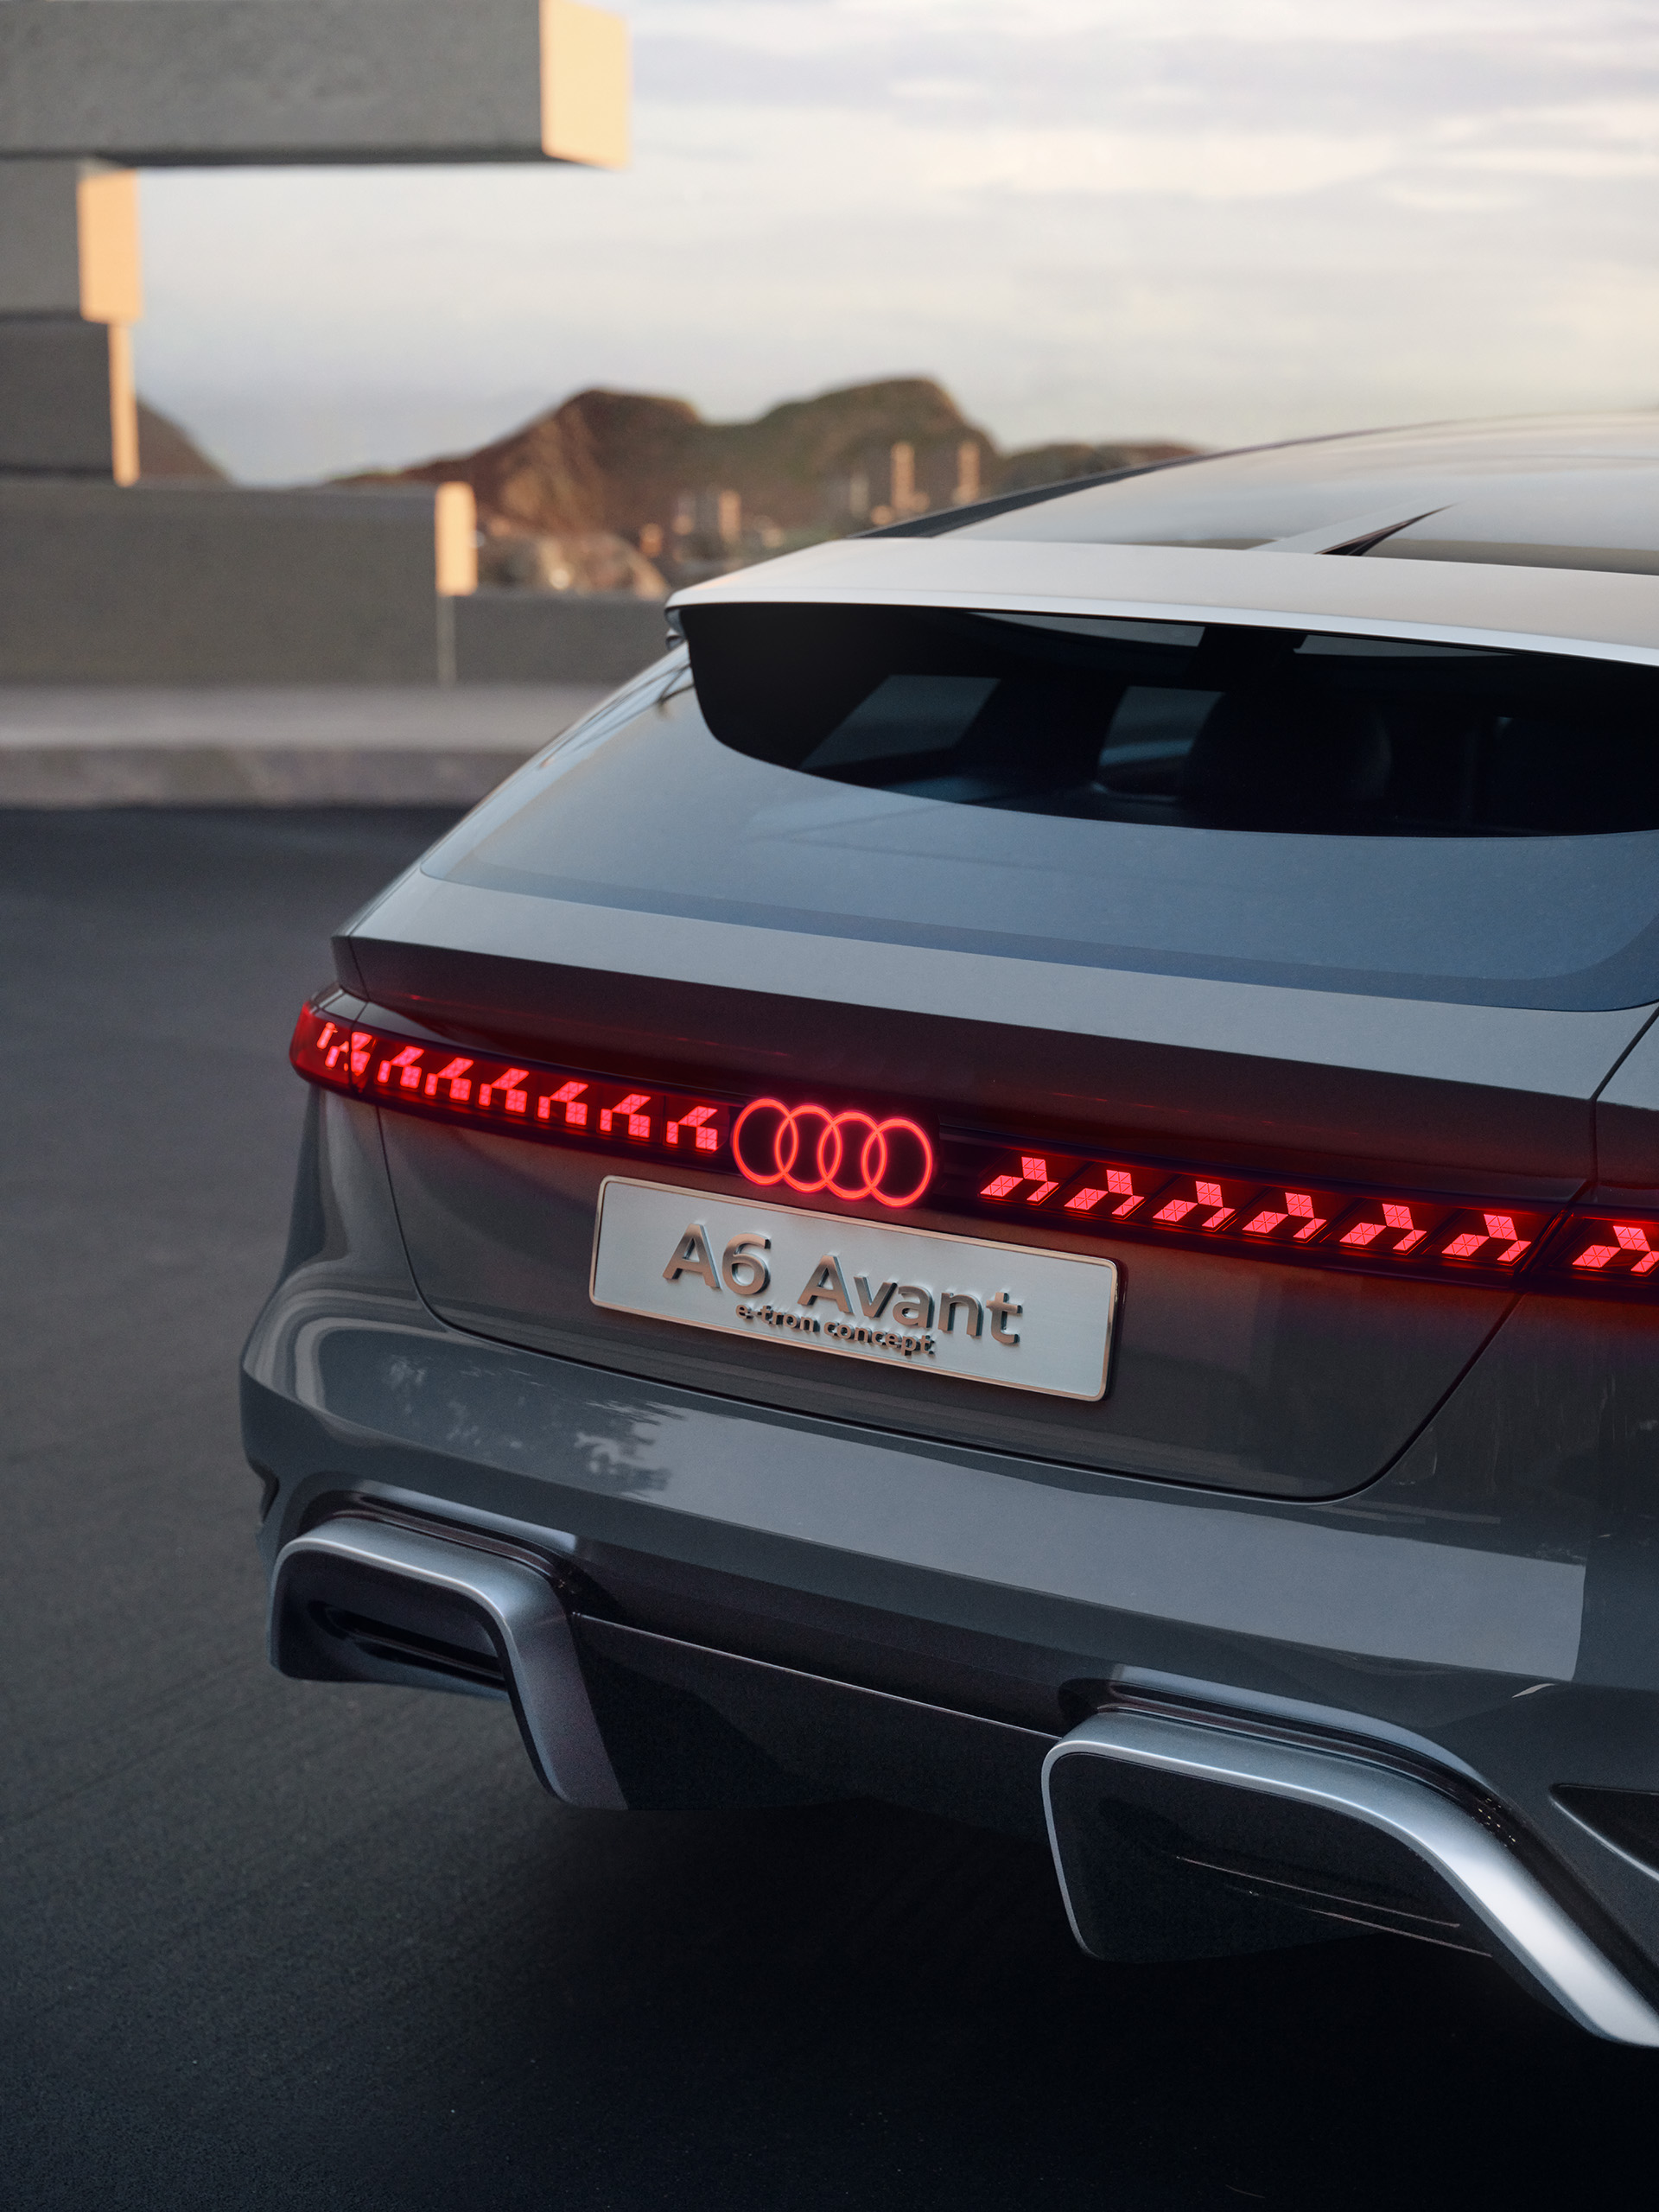 Widok z tyłu Audi A6 Avant e-tron concept z ciągłym paskiem świetlnym.